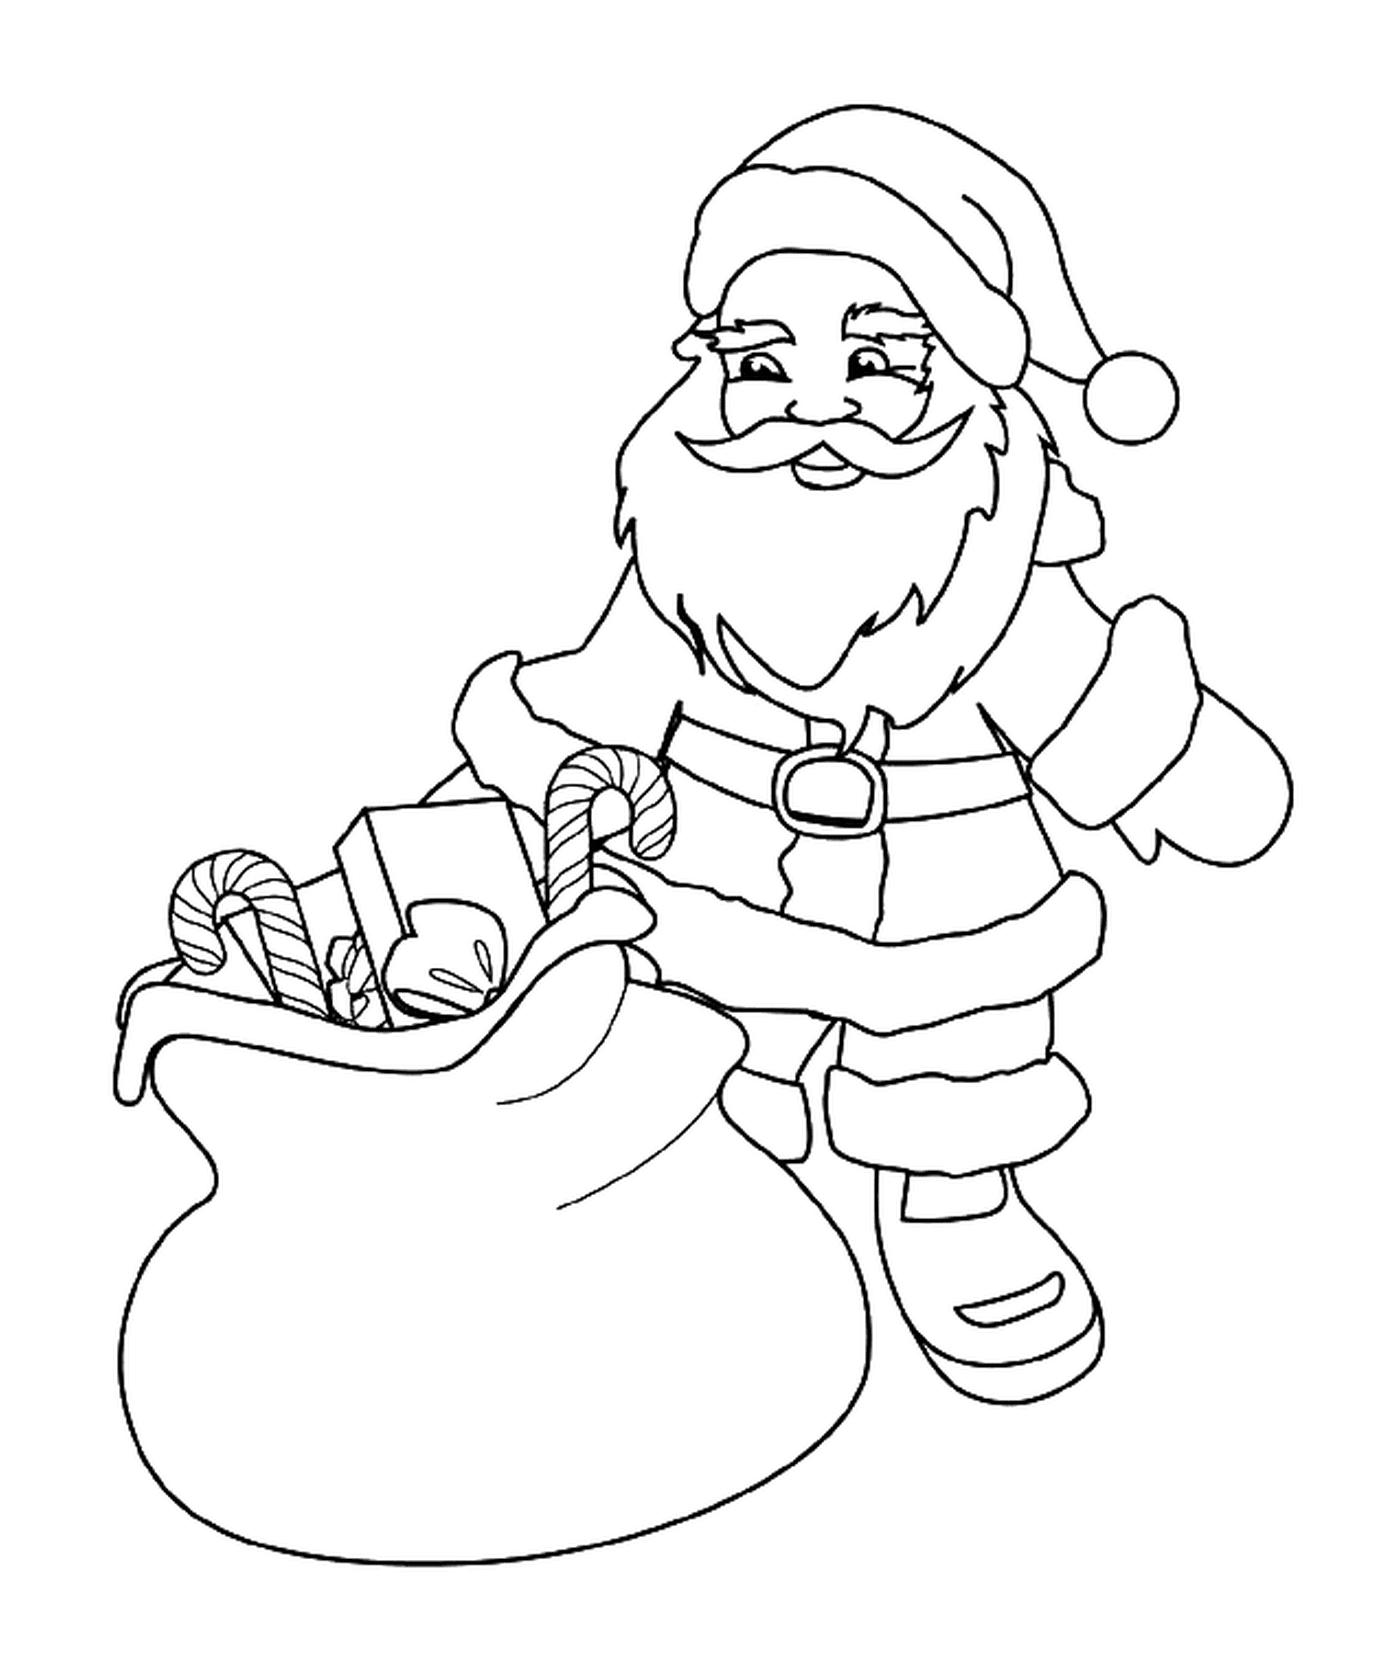  Santa mit ihrer Tasche von Spielzeug und Leckereien 